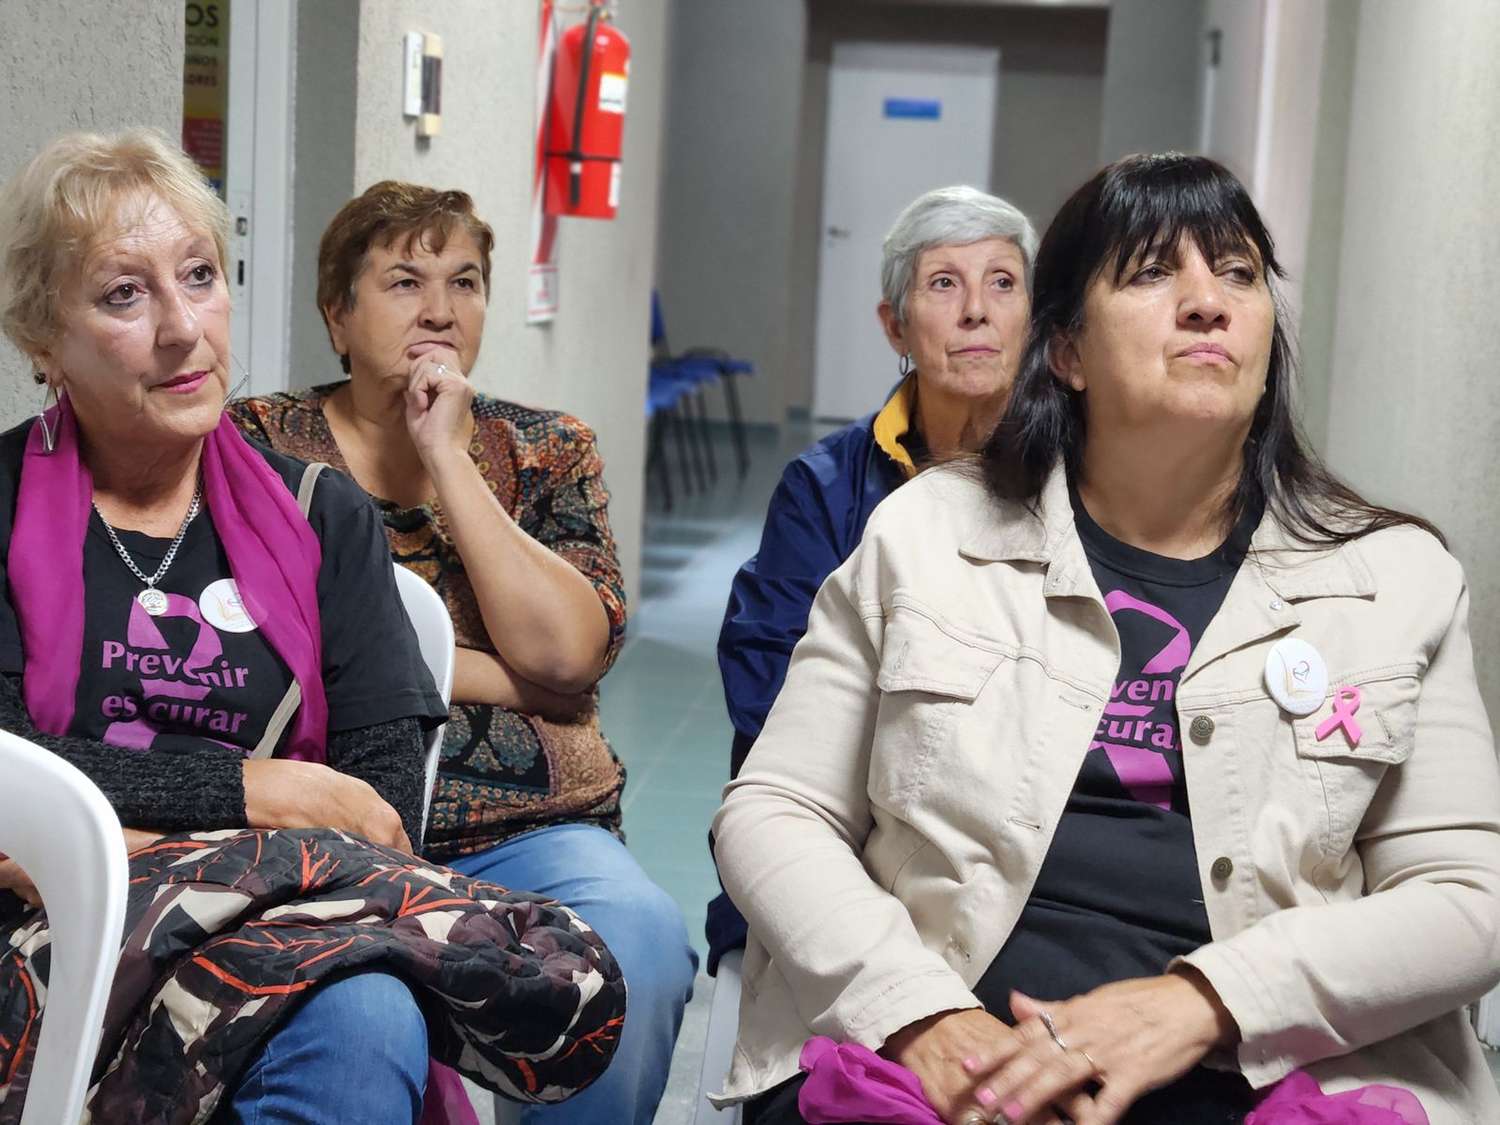 La Francia: 50 mujeres se hicieron sus estudios gratuitos en el hospital